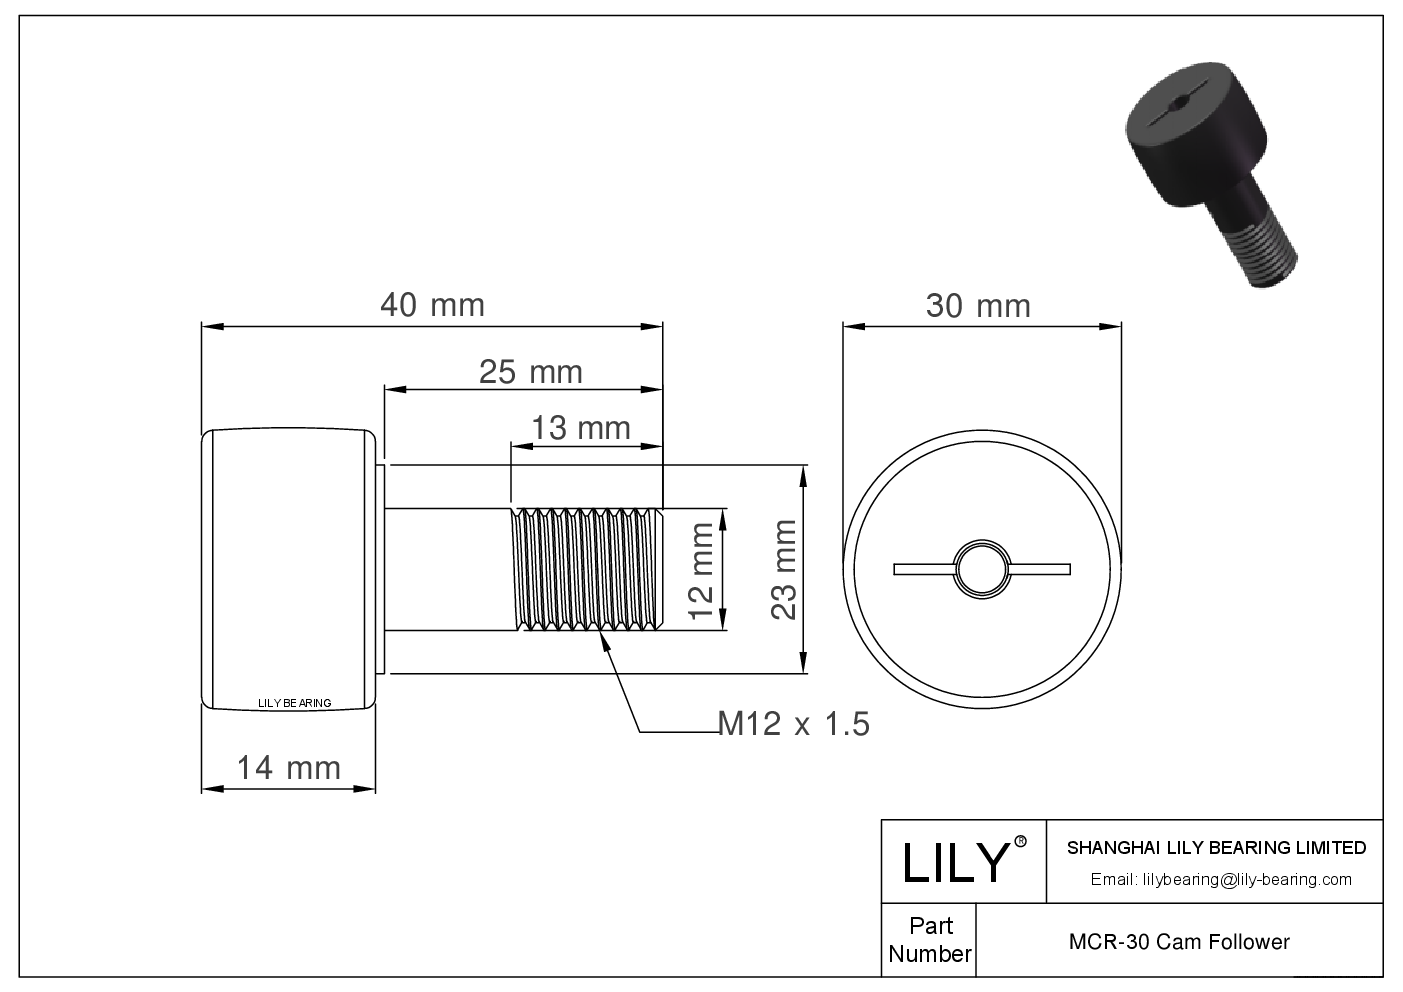 MCR-30 Stud Style Metric Cam Followers CAD图形